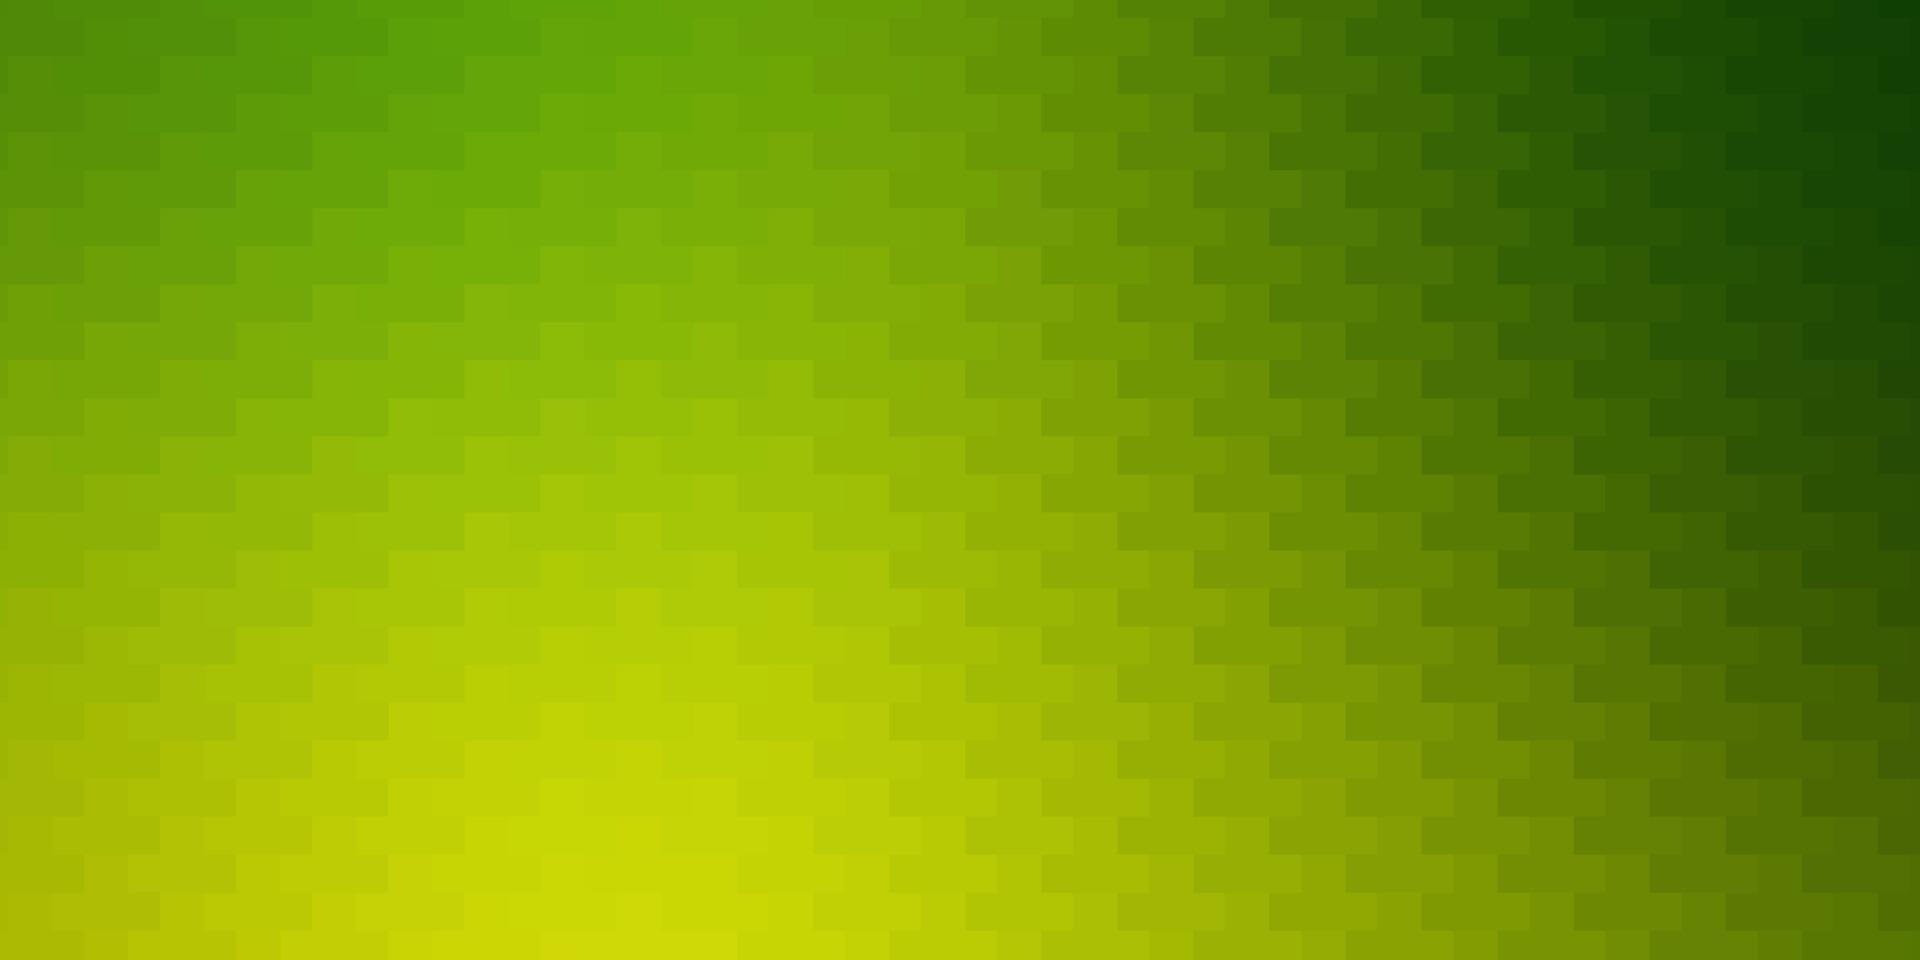 patrón de vector verde claro, amarillo en estilo cuadrado.